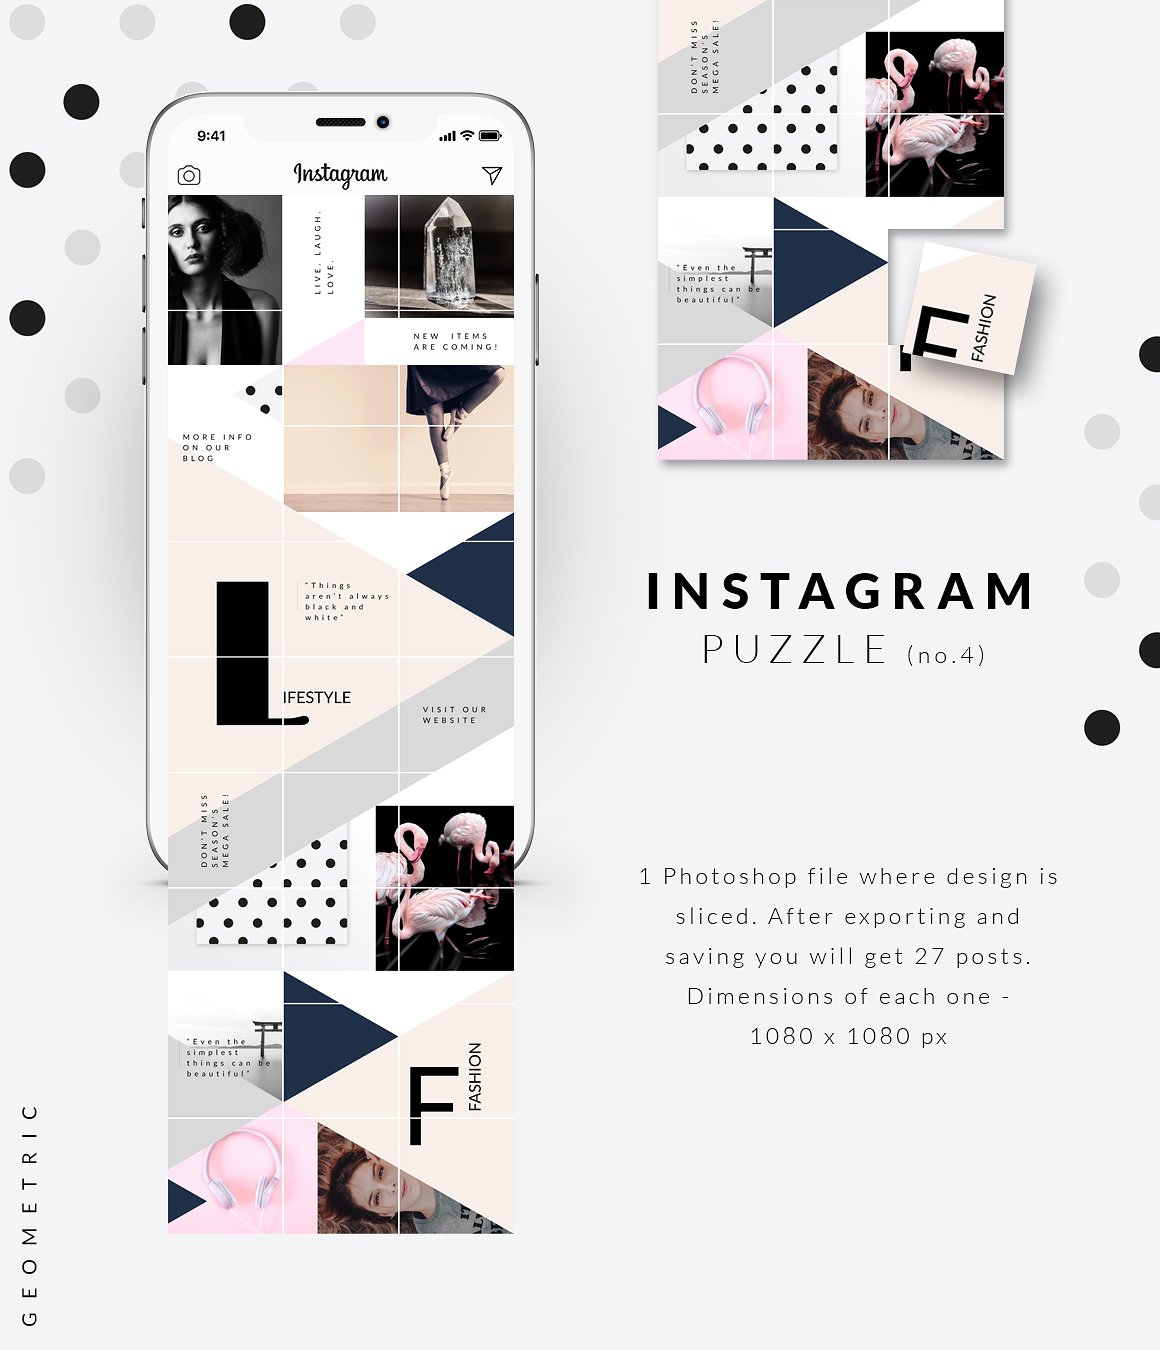 时尚高端几何形状布局的Instagram模板蚂蚁素材精选 Instagram PUZZLE template -Geometric [psd]插图(4)